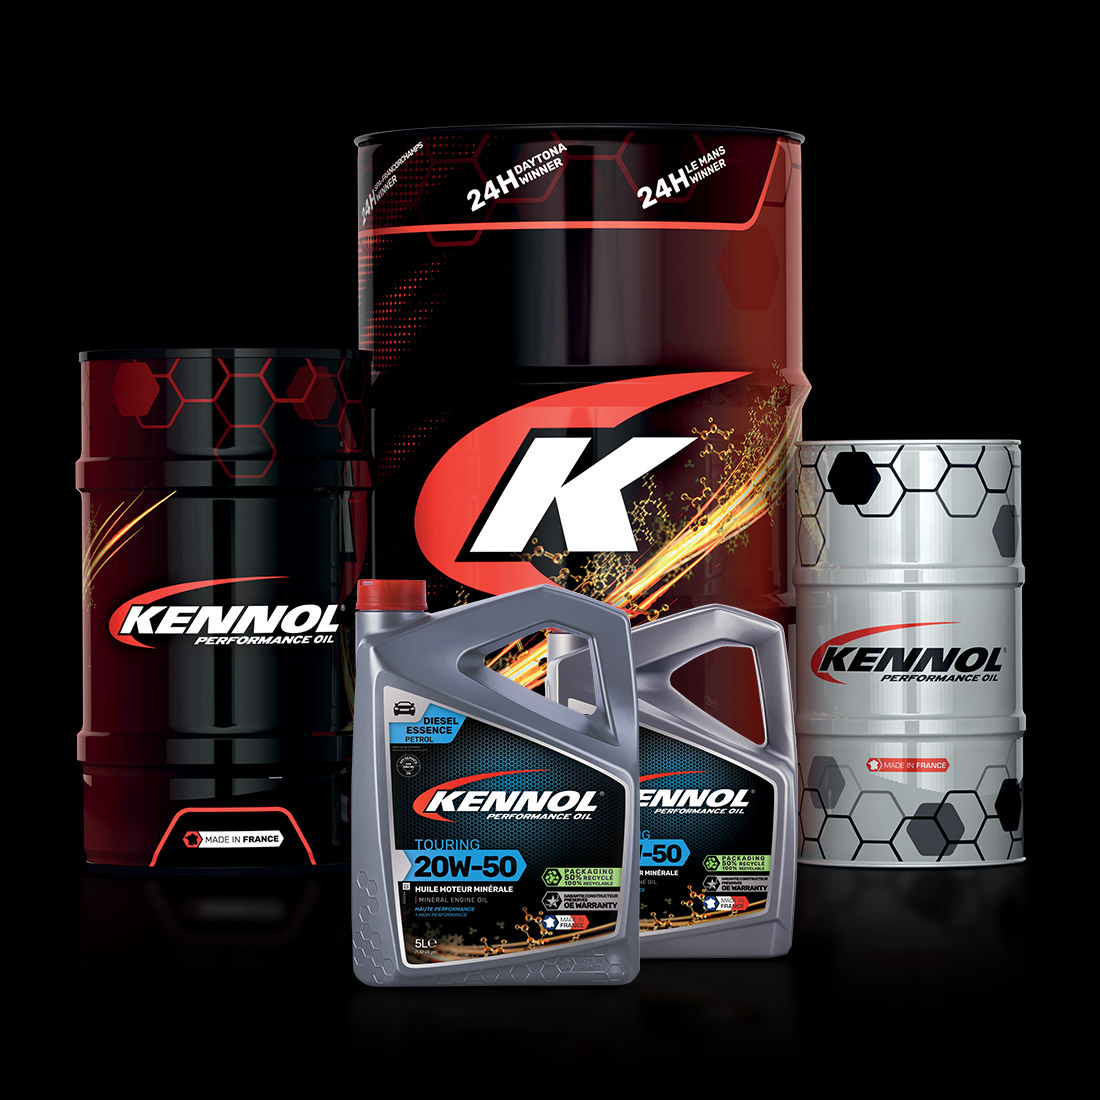 KENNOL TOURING 20W50 range packshot